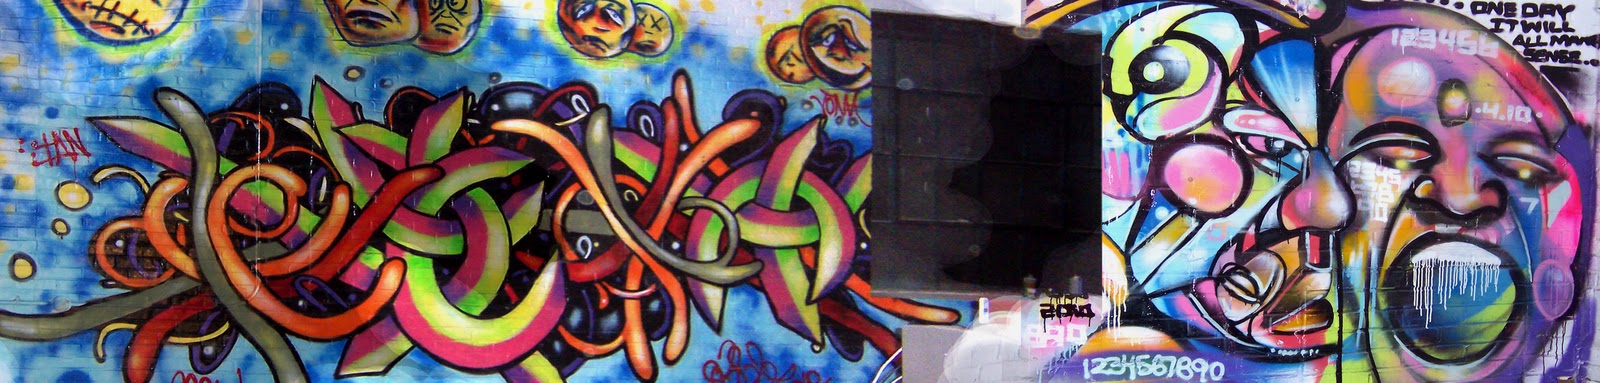 Shifting Definitions Of Art Municipal Support Graffiti